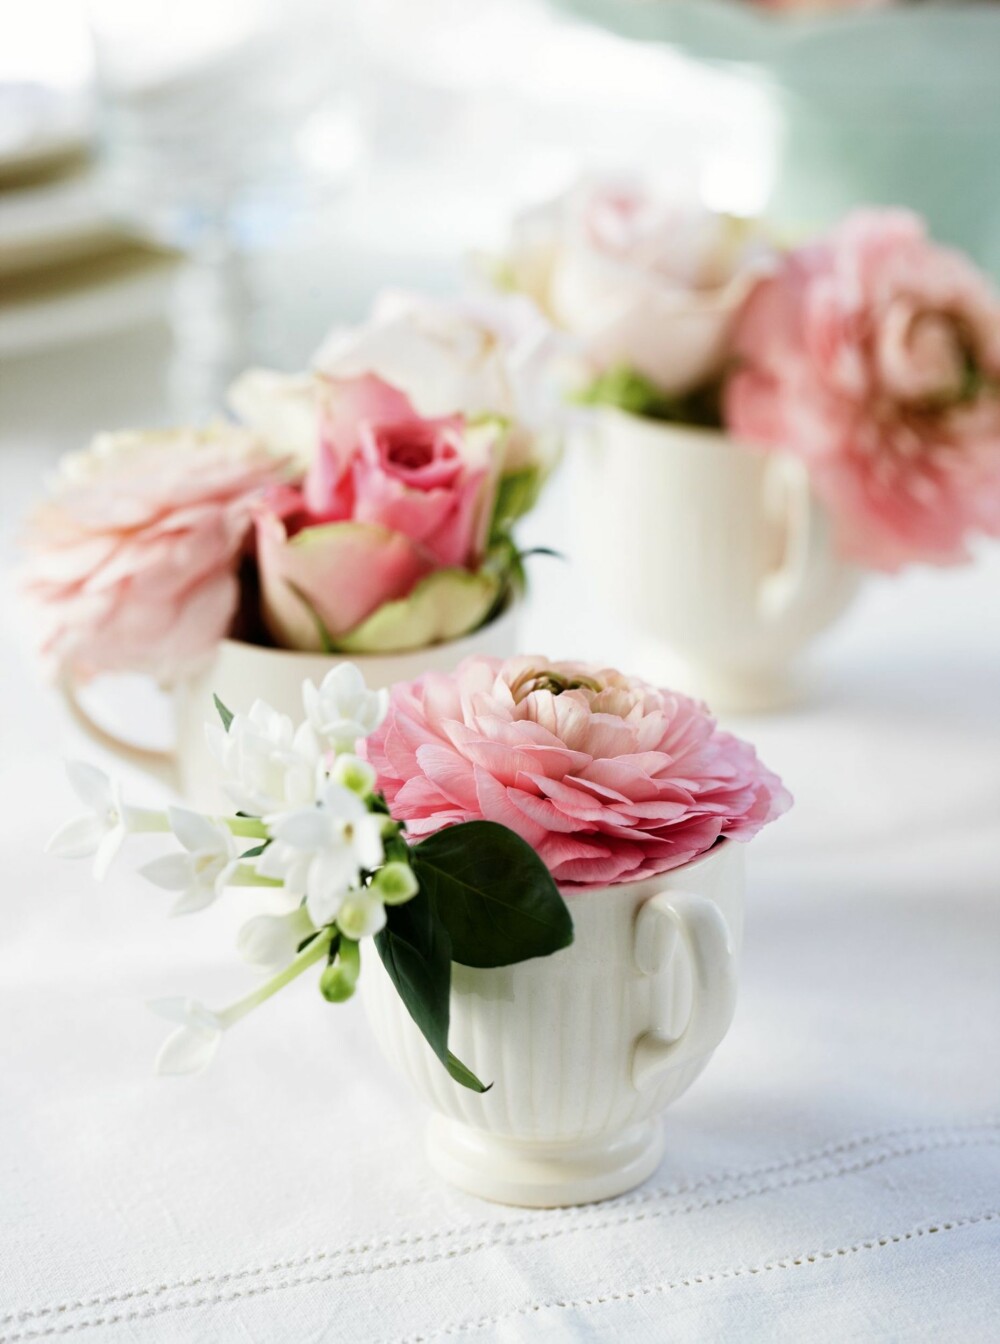 FRISKE BLOMSTER: Små blomster i små vaser. Kan det bli yndigere?